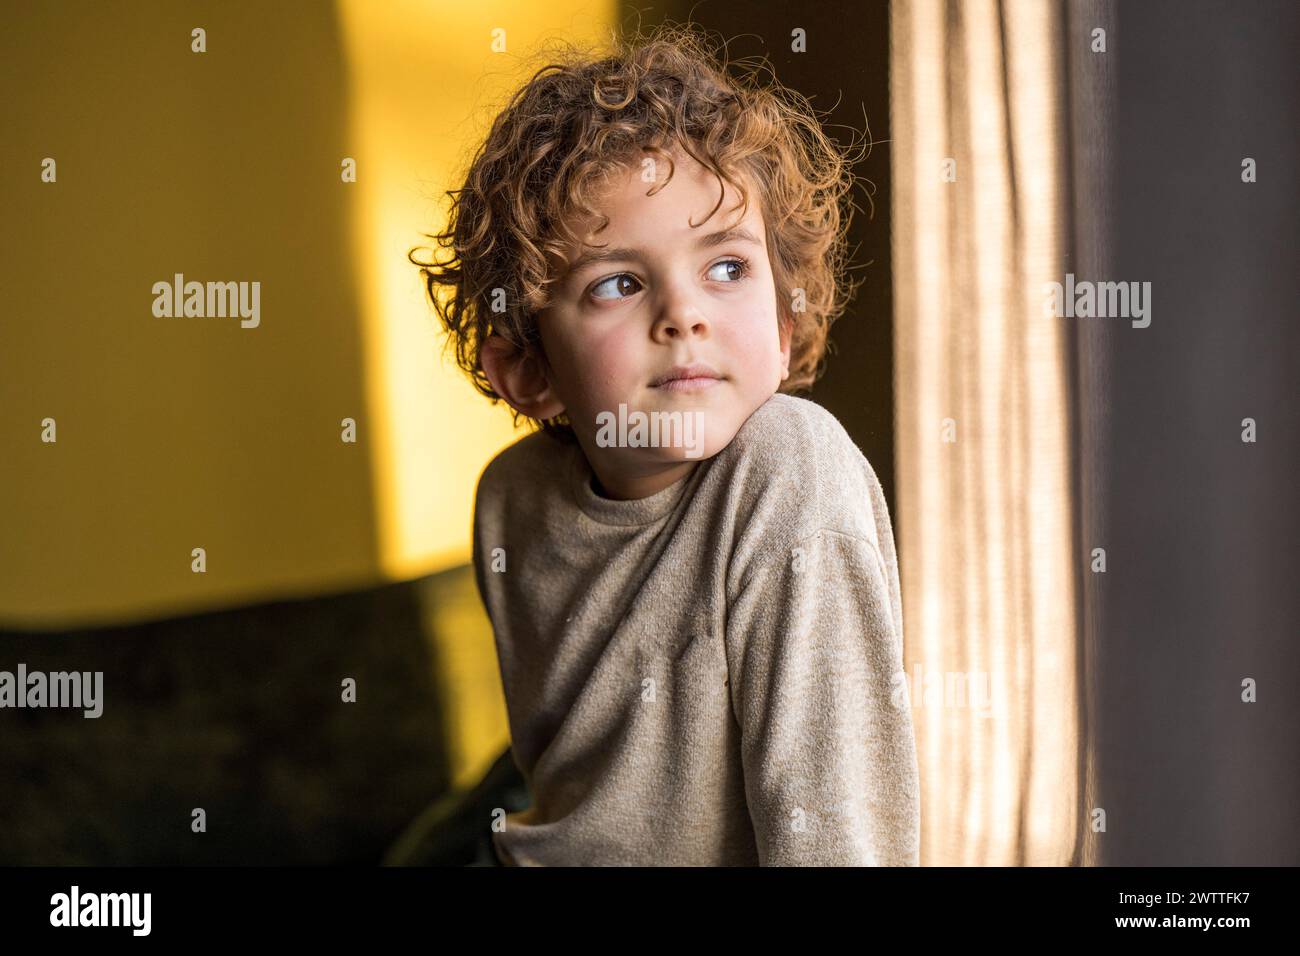 Ein kleines Kind, das aus einem sonnendurchfluteten Fenster blickt Stockfoto